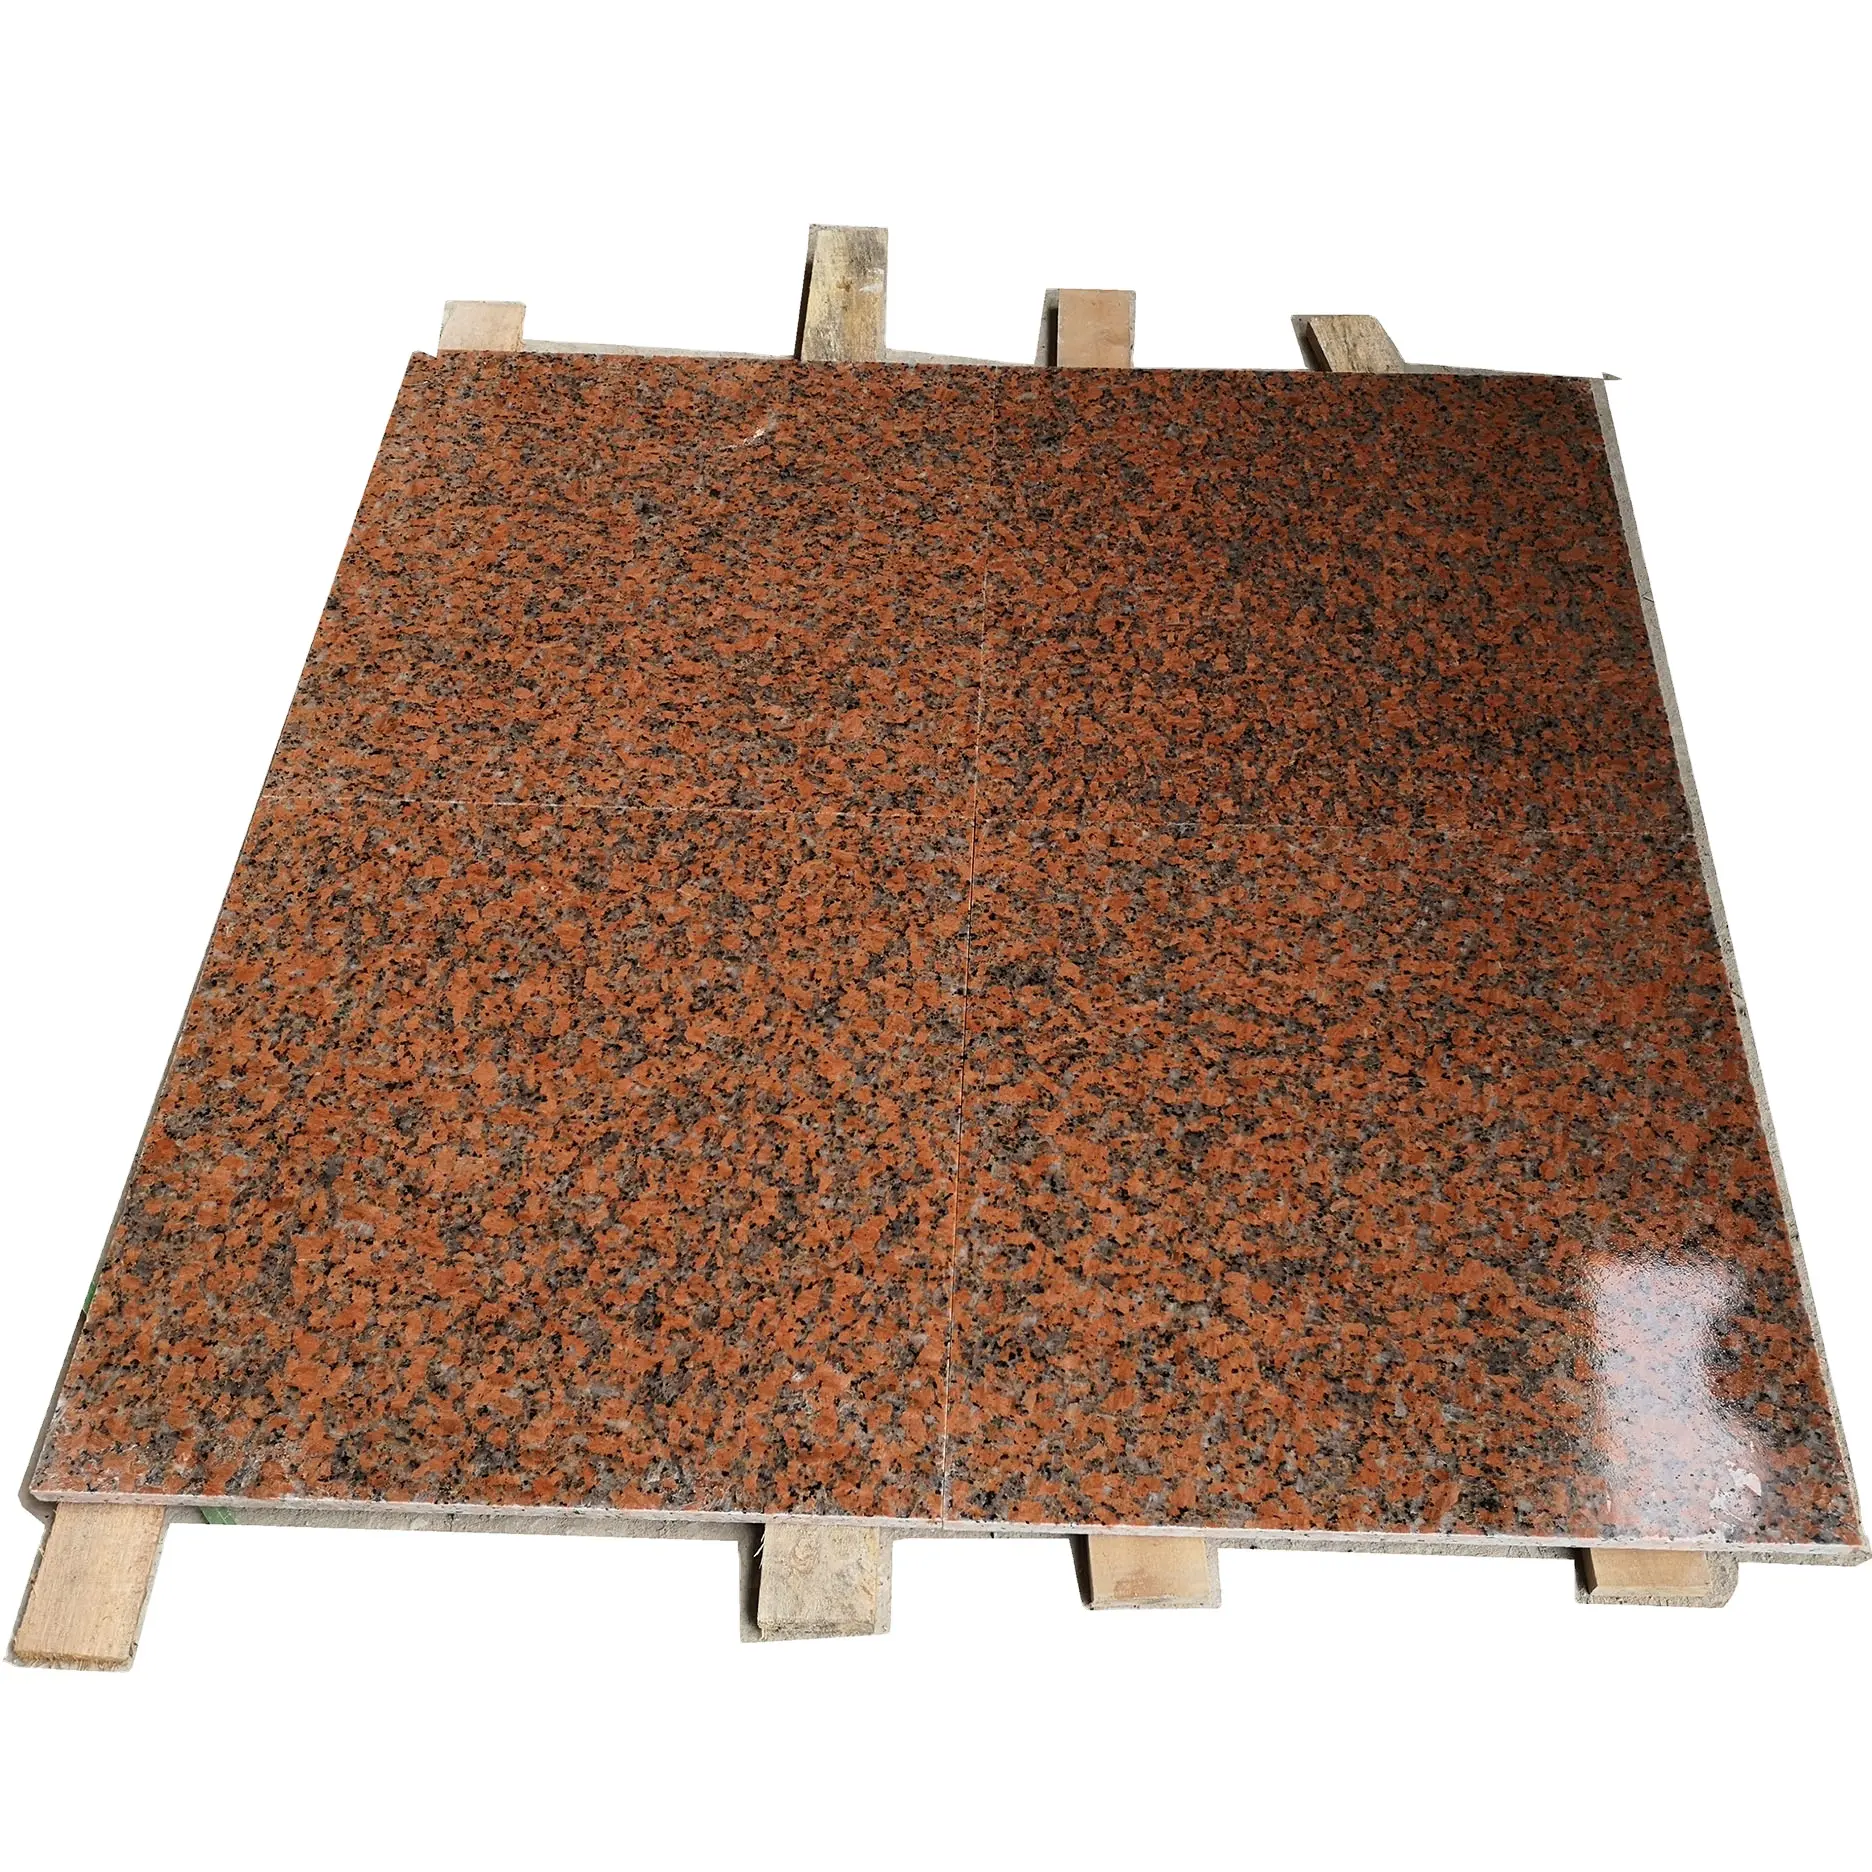 Granite Tile Factory Supply Red Granite Stone G562 Maple Red Tile For Floor Paver